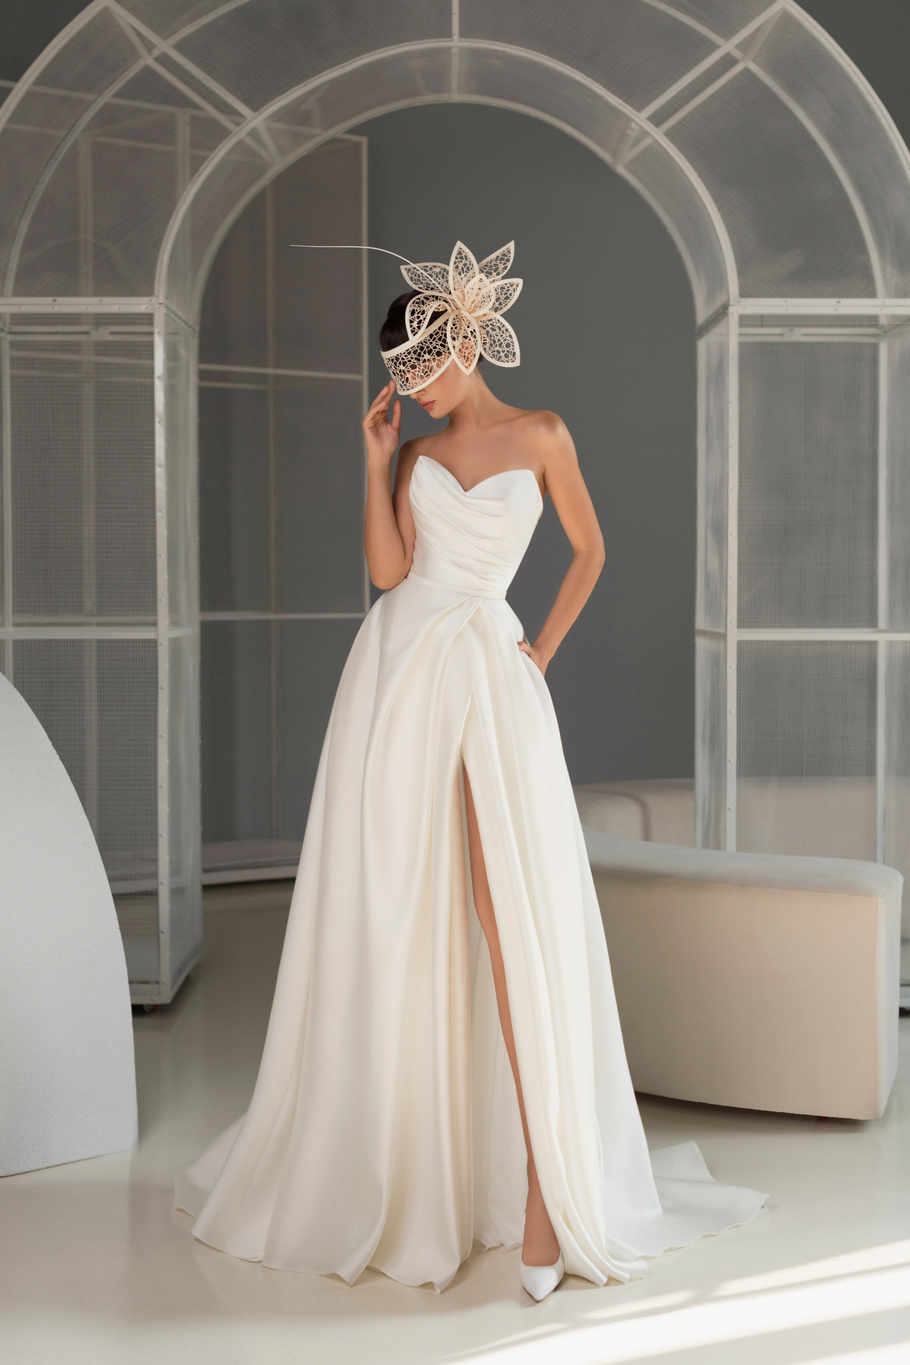 Купить свадебное платье «Айседора» Мэрри Марк из коллекции 2022 года в Москве